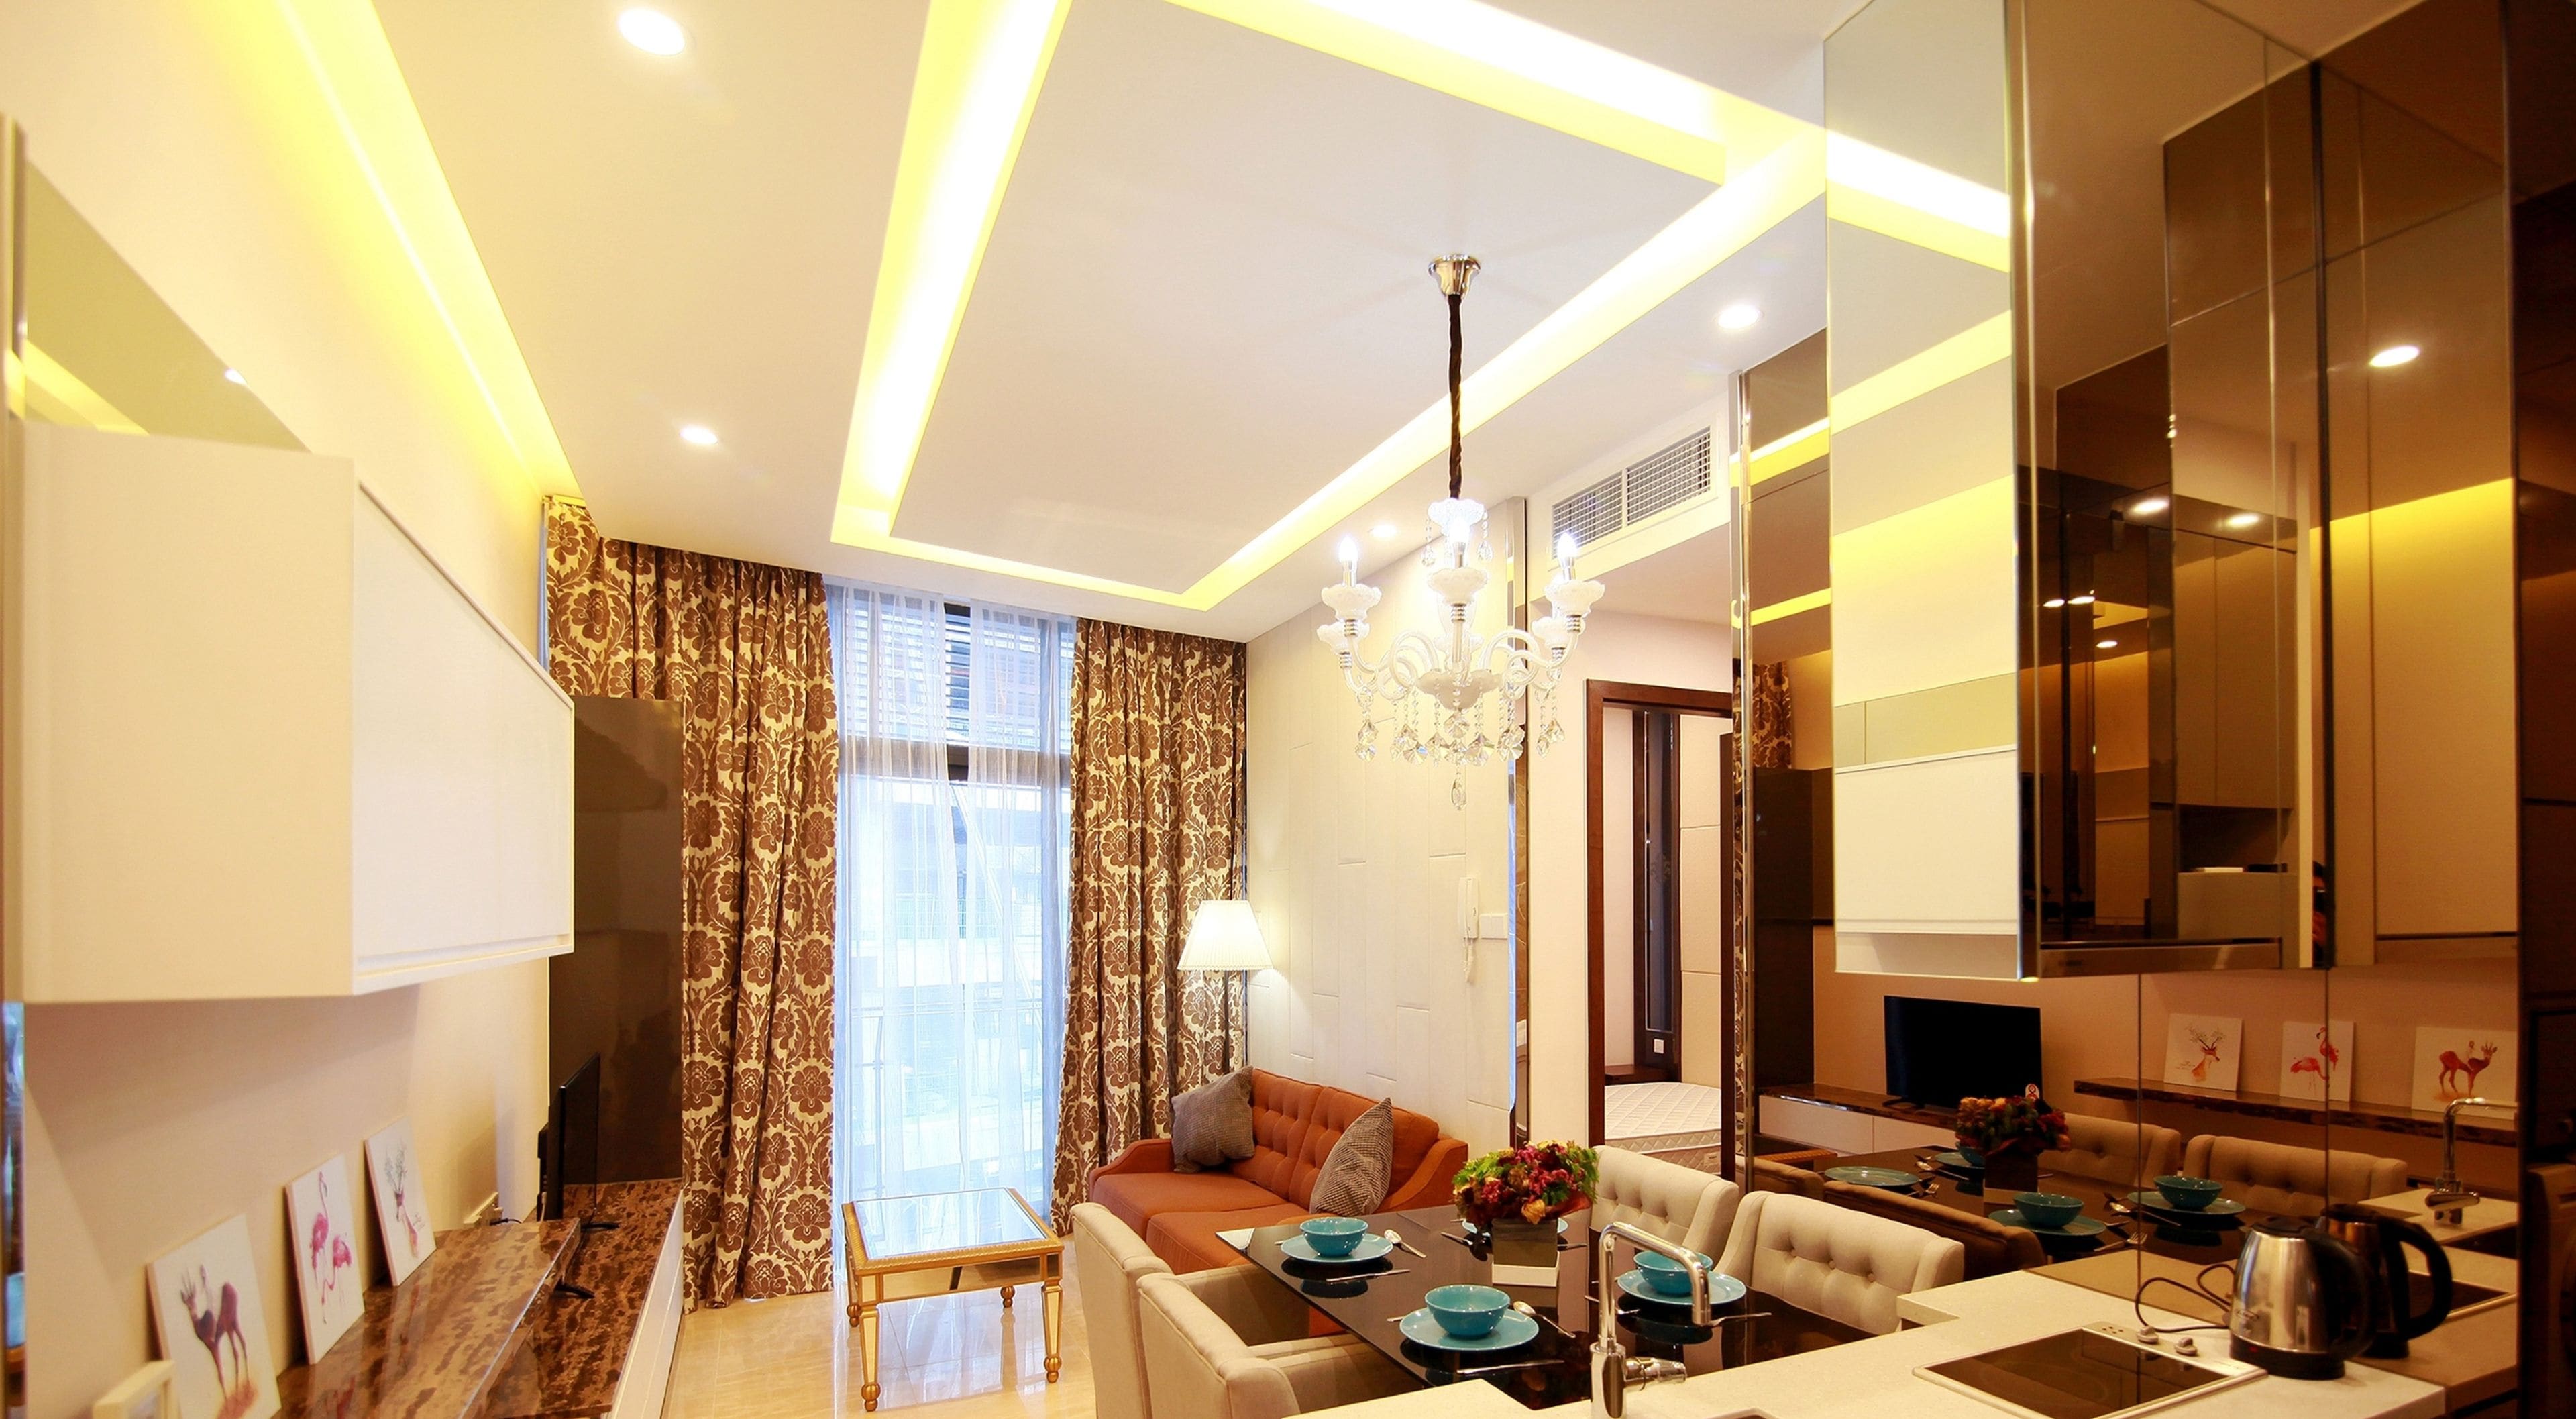 Dorsett Residence Bukit Bintang by Vale Pine Luxury Homes